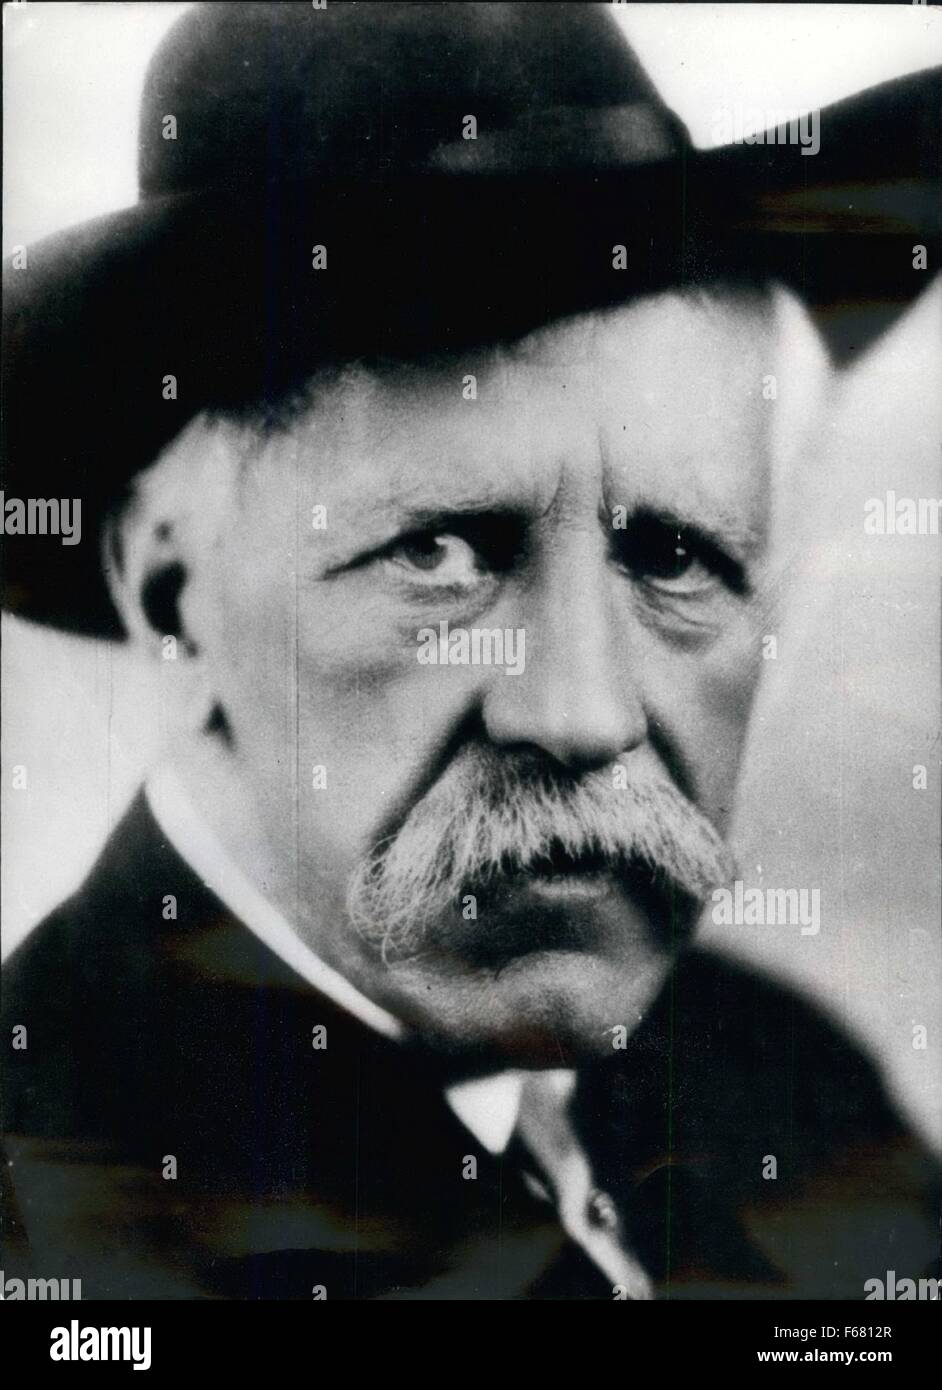 1929 - 100. Geburtstag des Fridtjof Nansen der norwegische Polarforscher und Staatsmannes Fridtjof Nansen, geboren am 10. Oktober 1861 auf dem Landgut Stora Froen Oslo, war der erste Südgrönlands 1888/89 zu überqueren. Von 1893 bis 1896 erkundete er das Nordpolarmeer. Von 1901 bis 1906 war er der Direktor der internationalen Laboratorien für Ozeanographie in Oslo. Nach dem ersten Weltkrieg Nansen gerichtet den Austausch von Kriegsgefangenen, und im Jahre 1922 erhielt er den Nobelpreis des Friedens. Nansen starb am 13. Mai 1930 in Lysaker in Norwegen. Keystone München Foto Foto 10.04.61 (Credit-Bild: © K Stockfoto